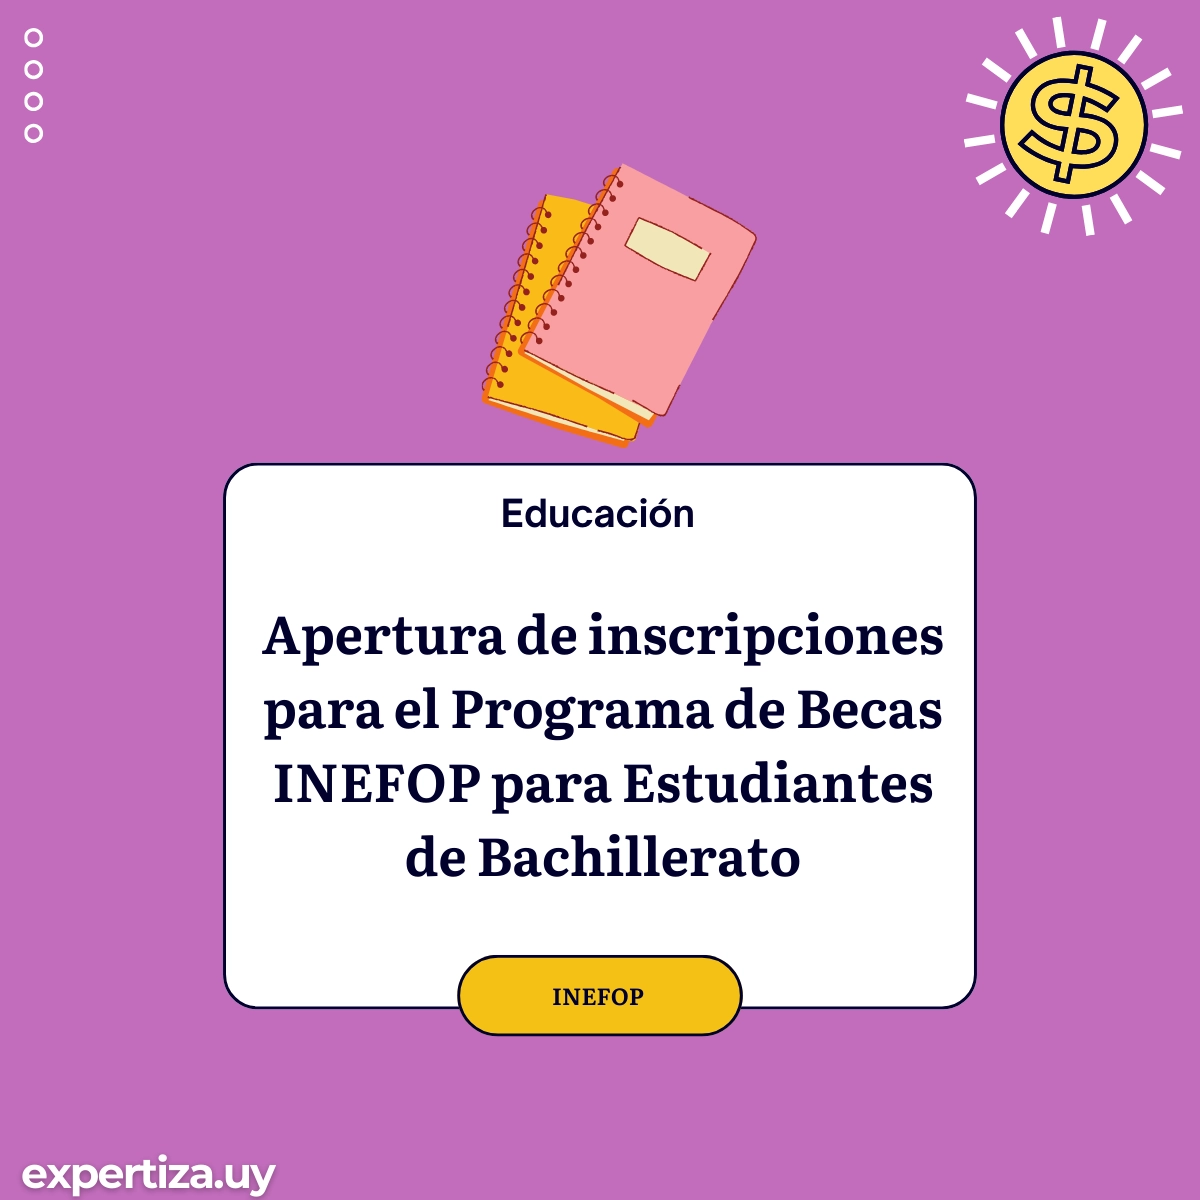 Apertura de inscripciones para el Programa de Becas INEFOP para Estudiantes de Bachillerato.